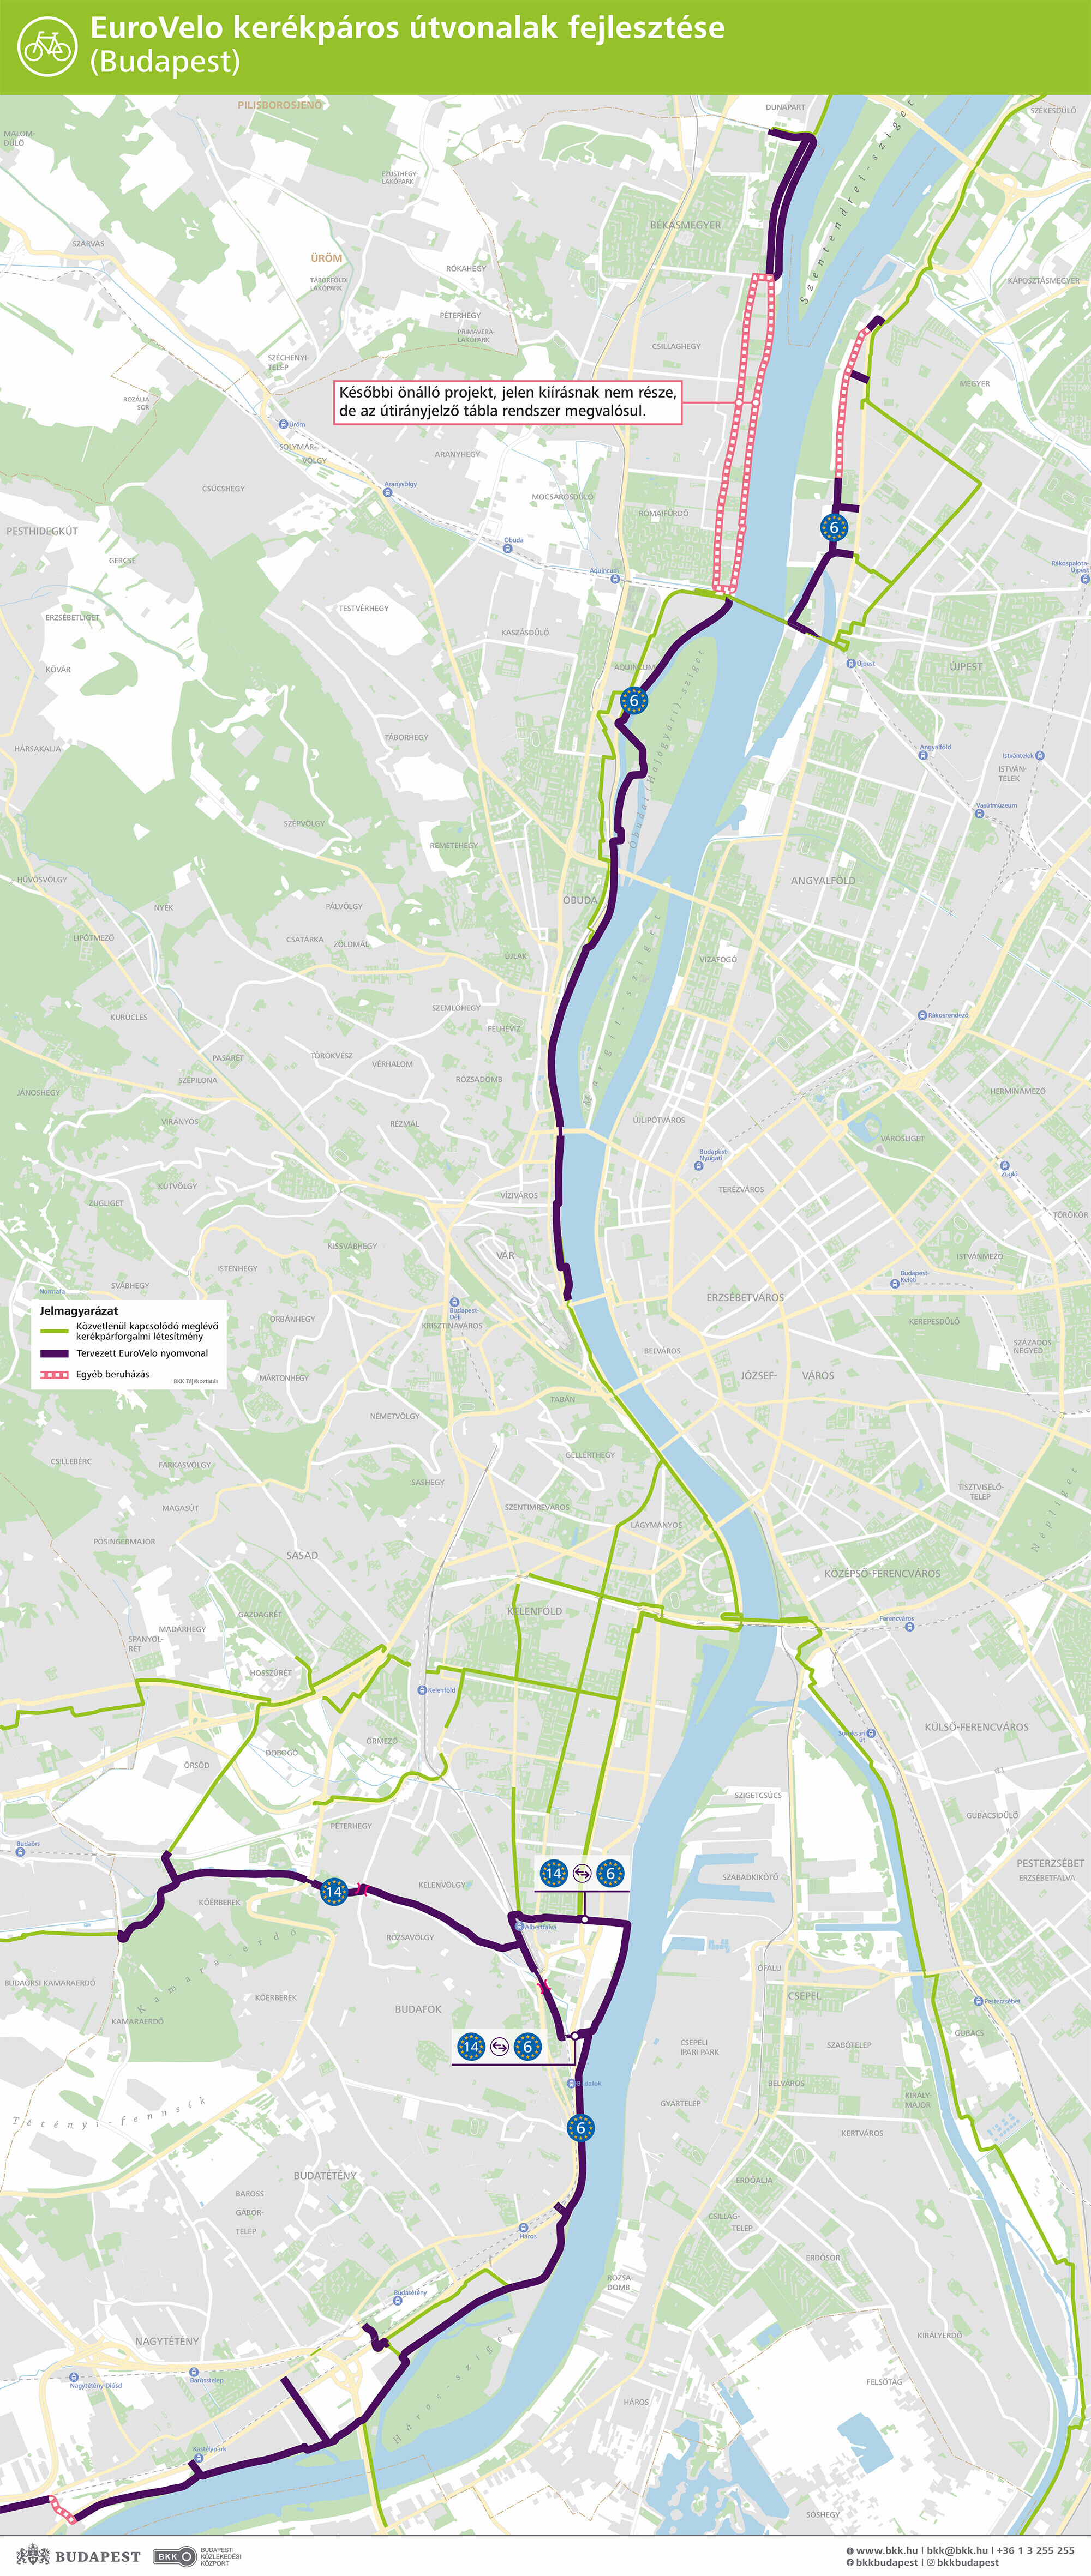 Az EuroVelo kerékpáros útvonalak fejlesztésének térképe